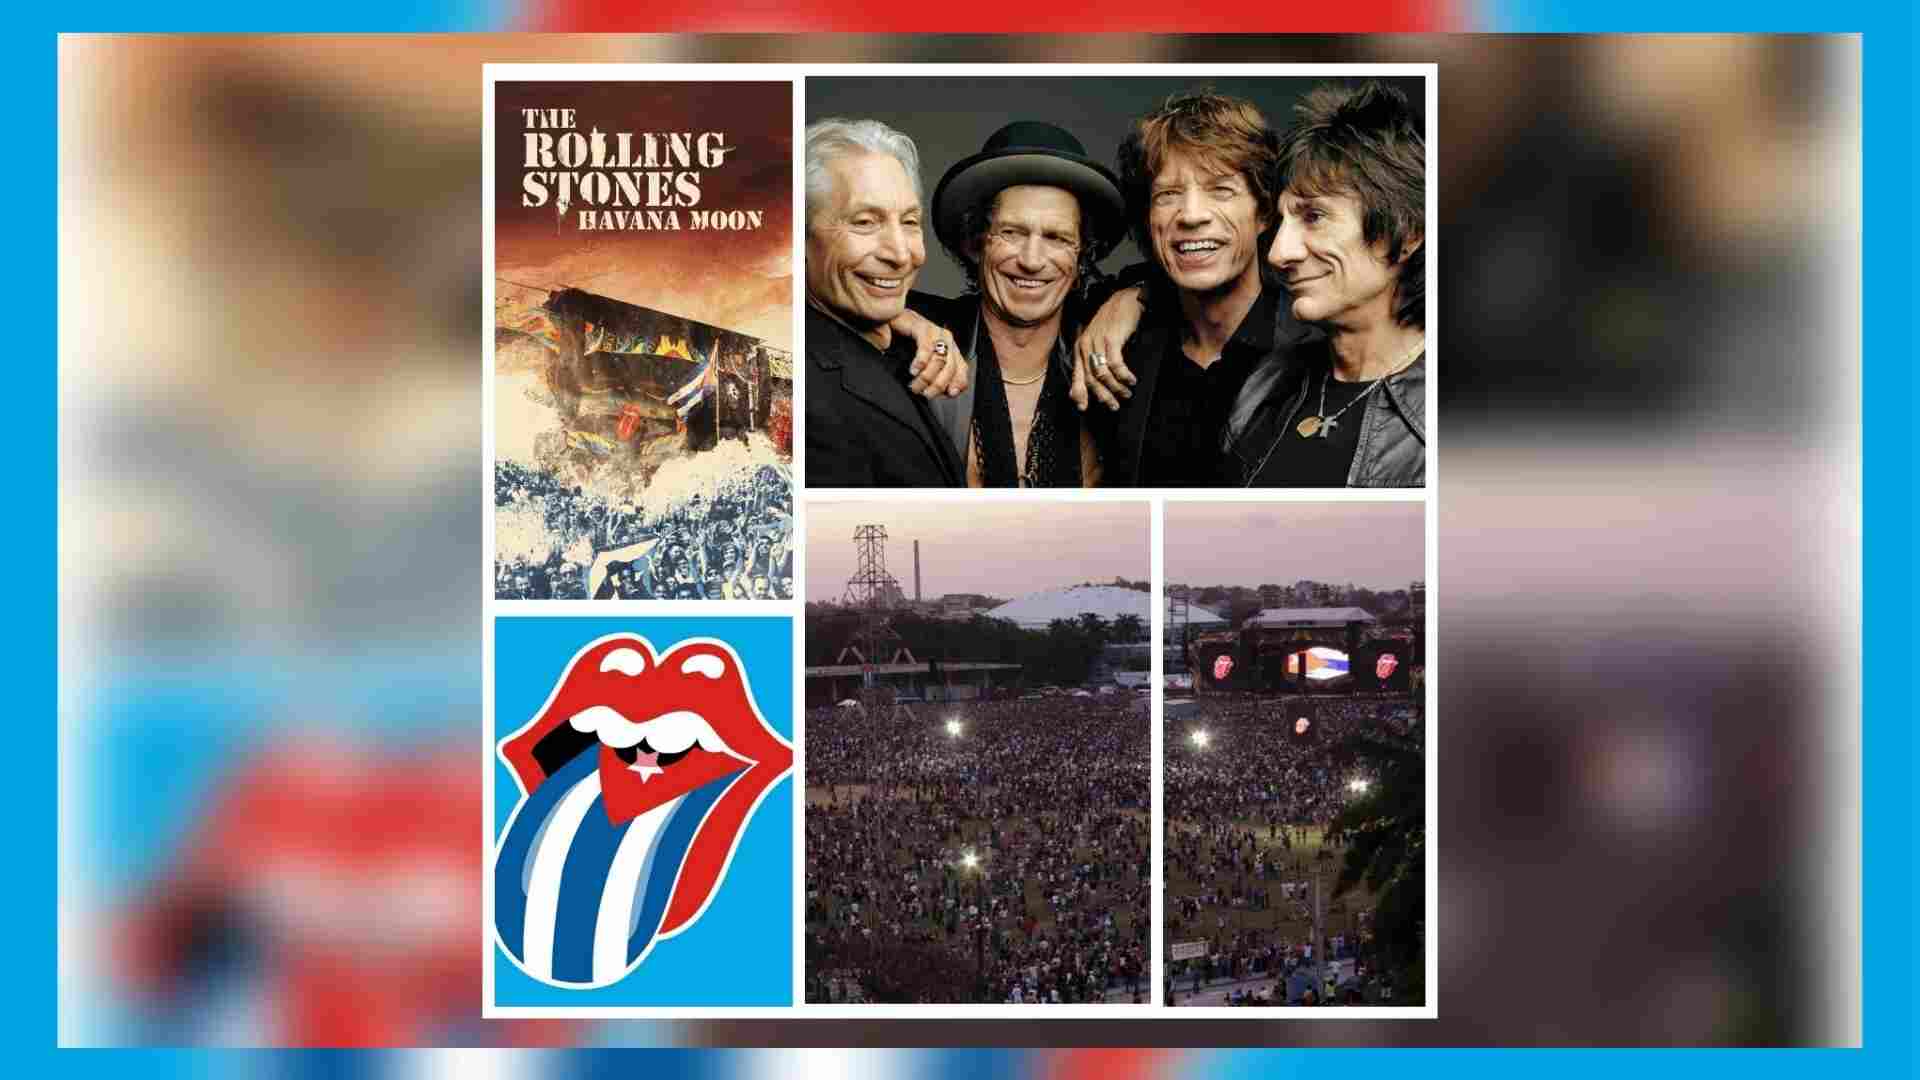 El rocancolesco y rocambolesco viaje para escuchar a los Rolling Stones